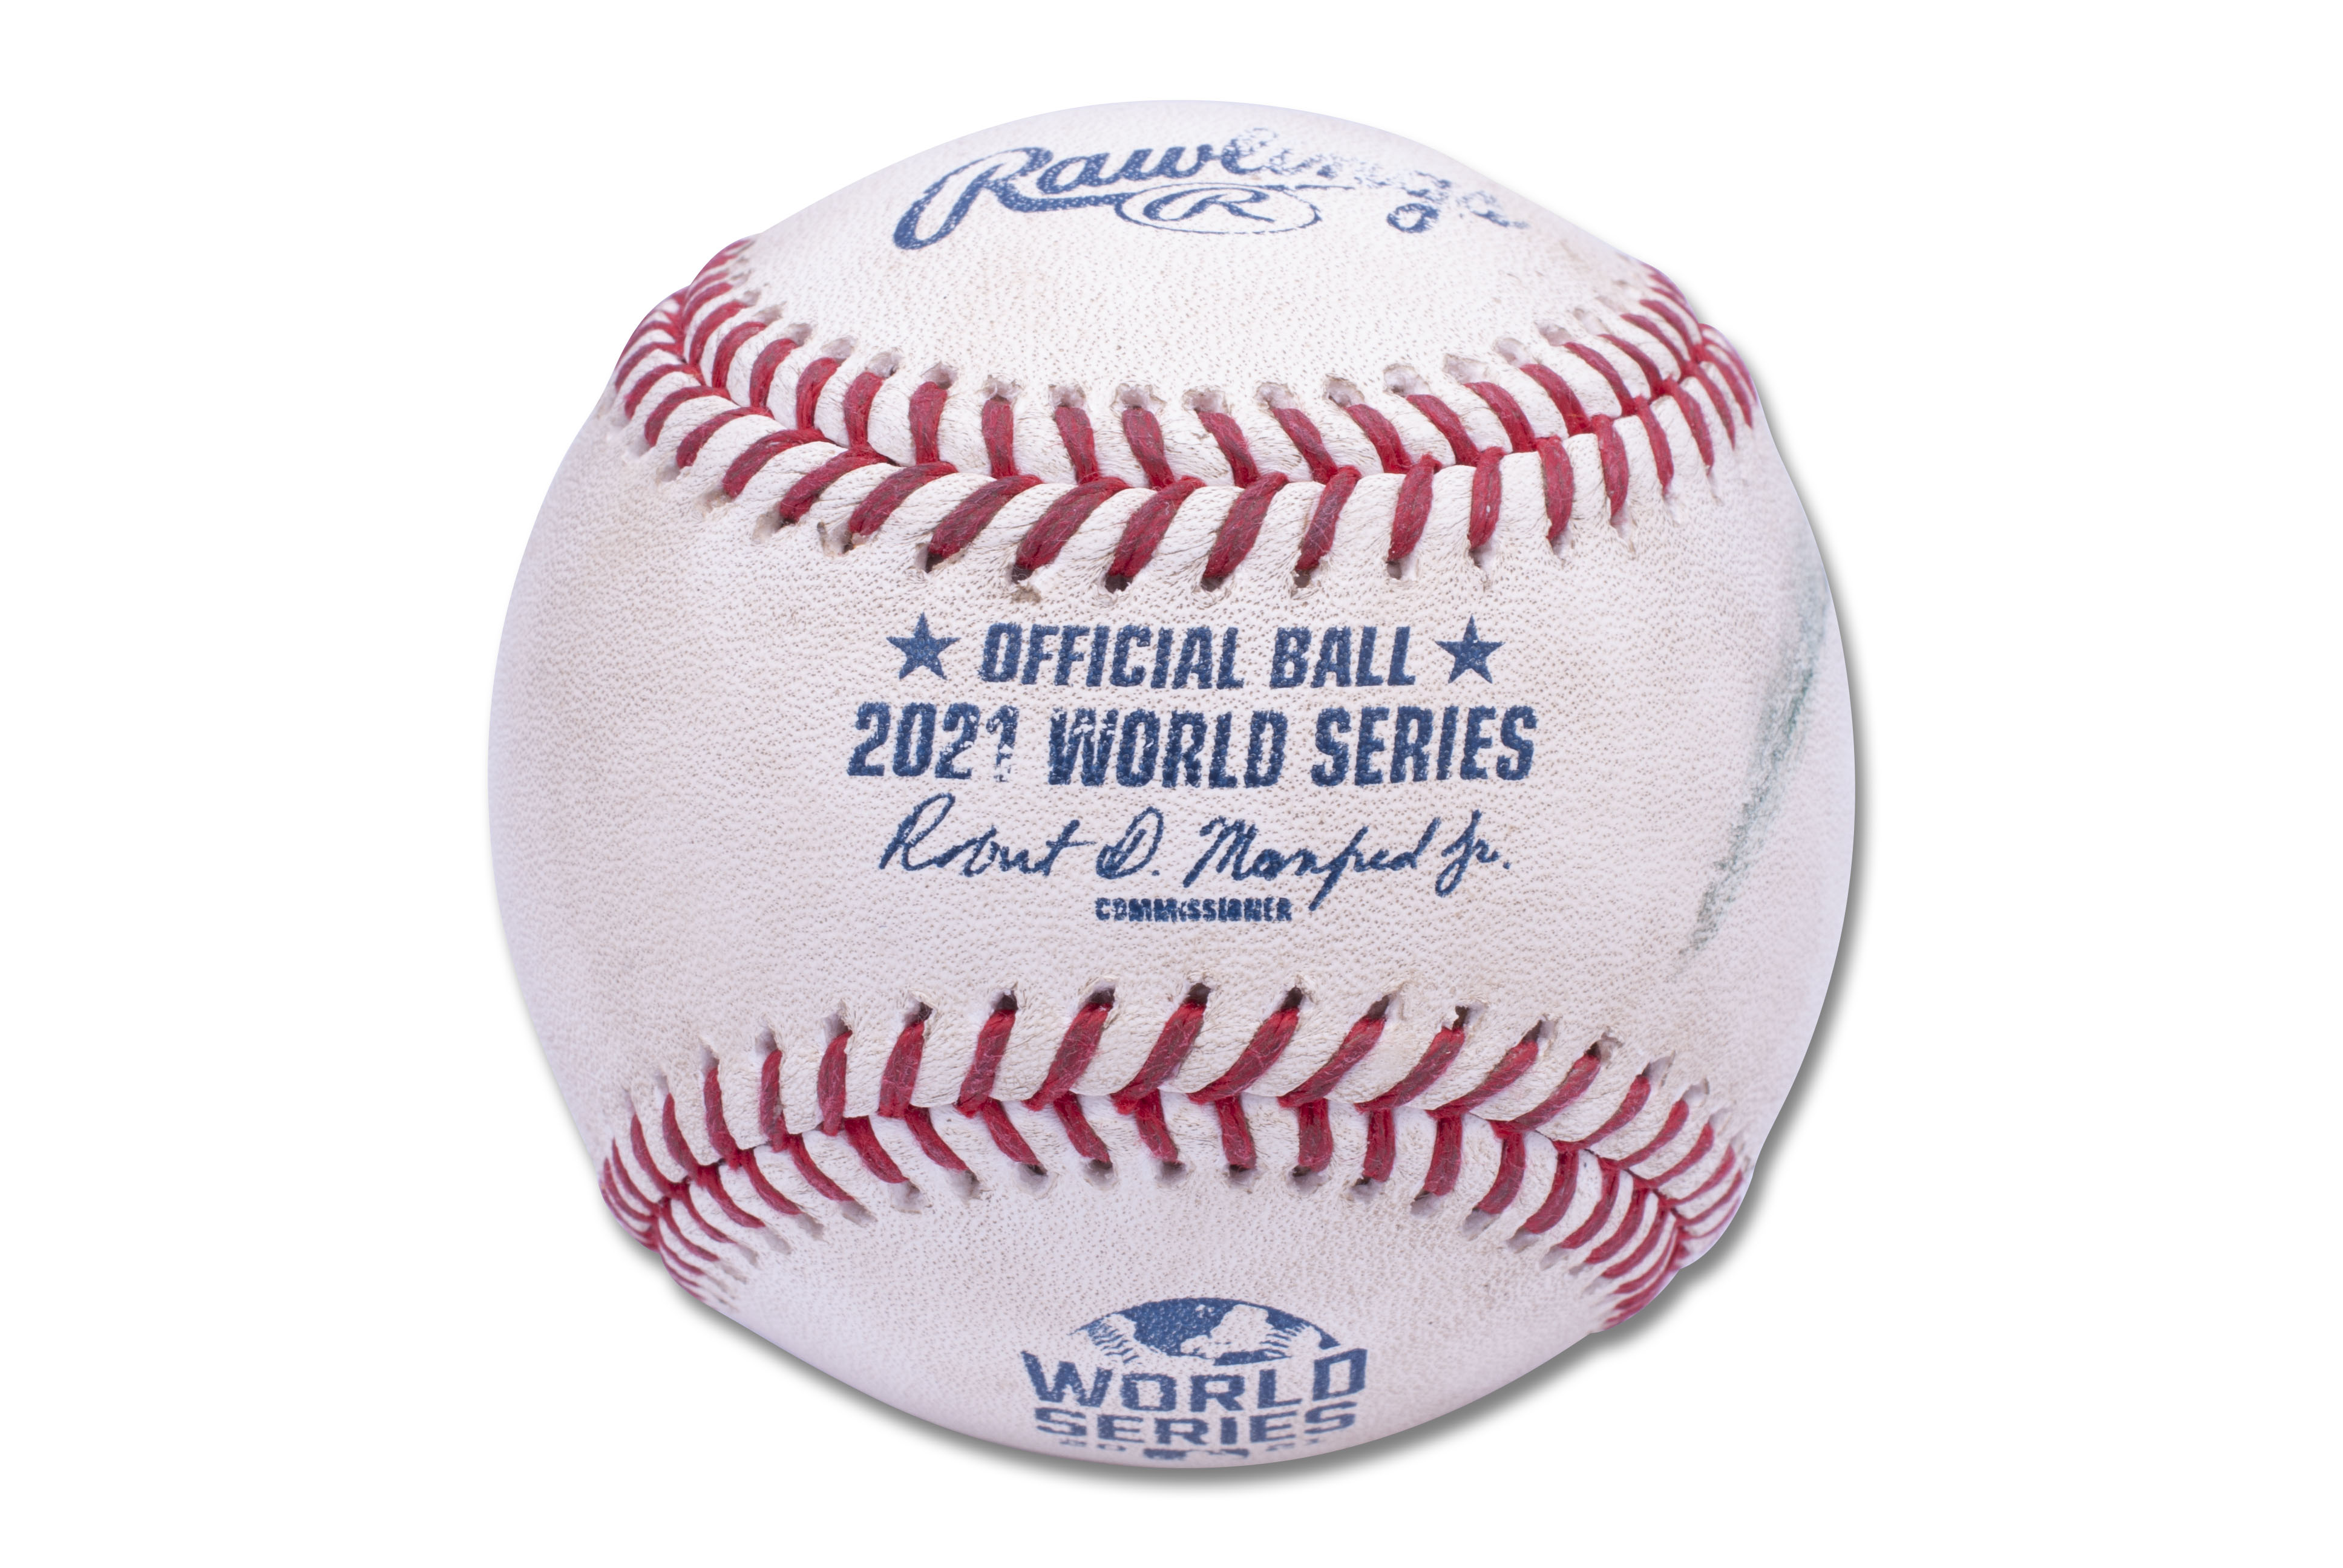 Rawlings, MLB 2021 World Series Champions Baseball